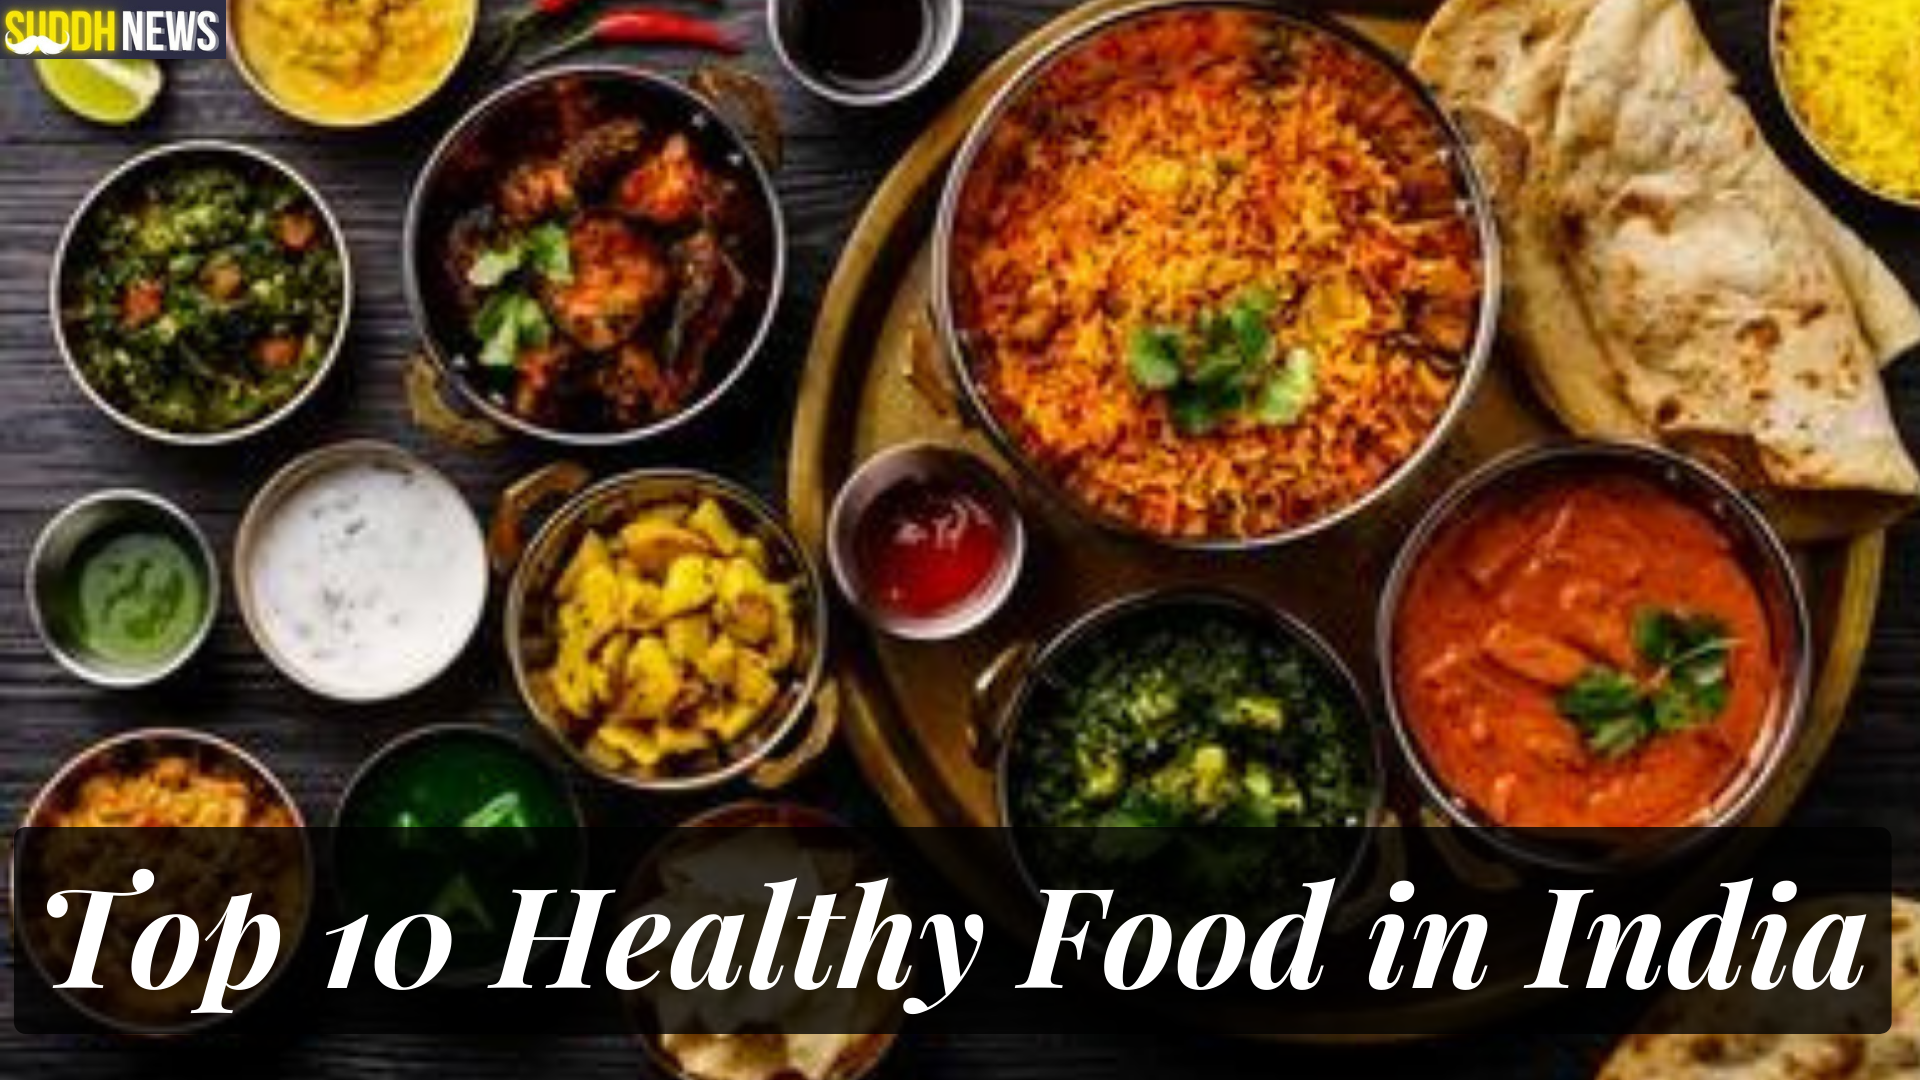 भारत के स्वस्थ भोजन की सूची: स्वास्थ्य के लिए अच्छा है